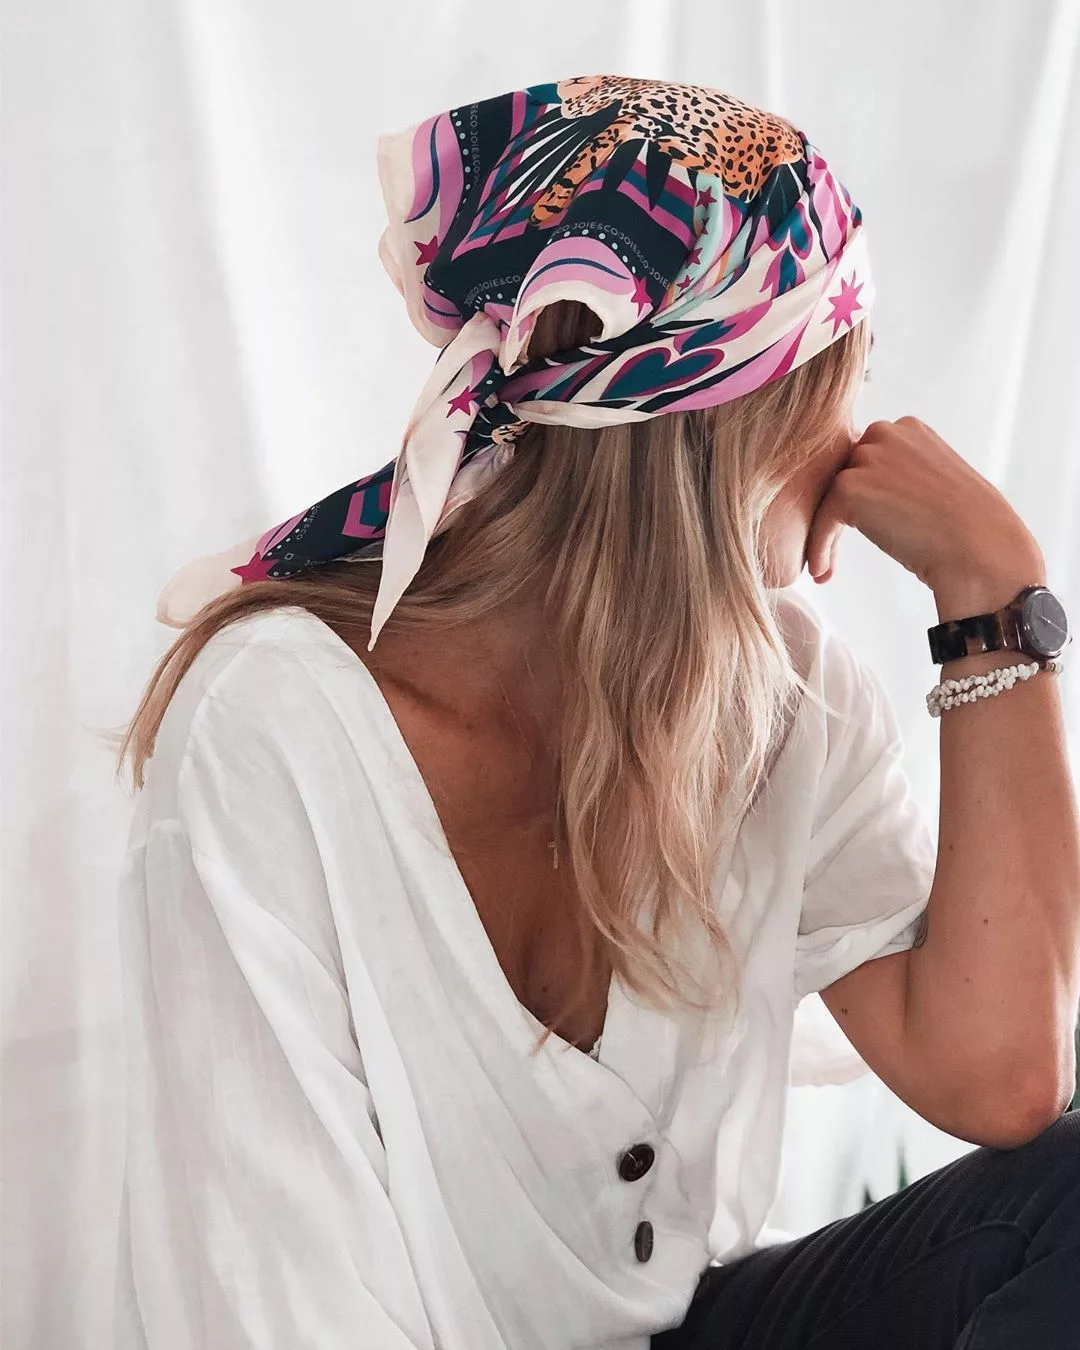 Bandido Ambiente Esencialmente Cómo usar una bandana de mujer? Los mejores tips – Moda – WebMediums